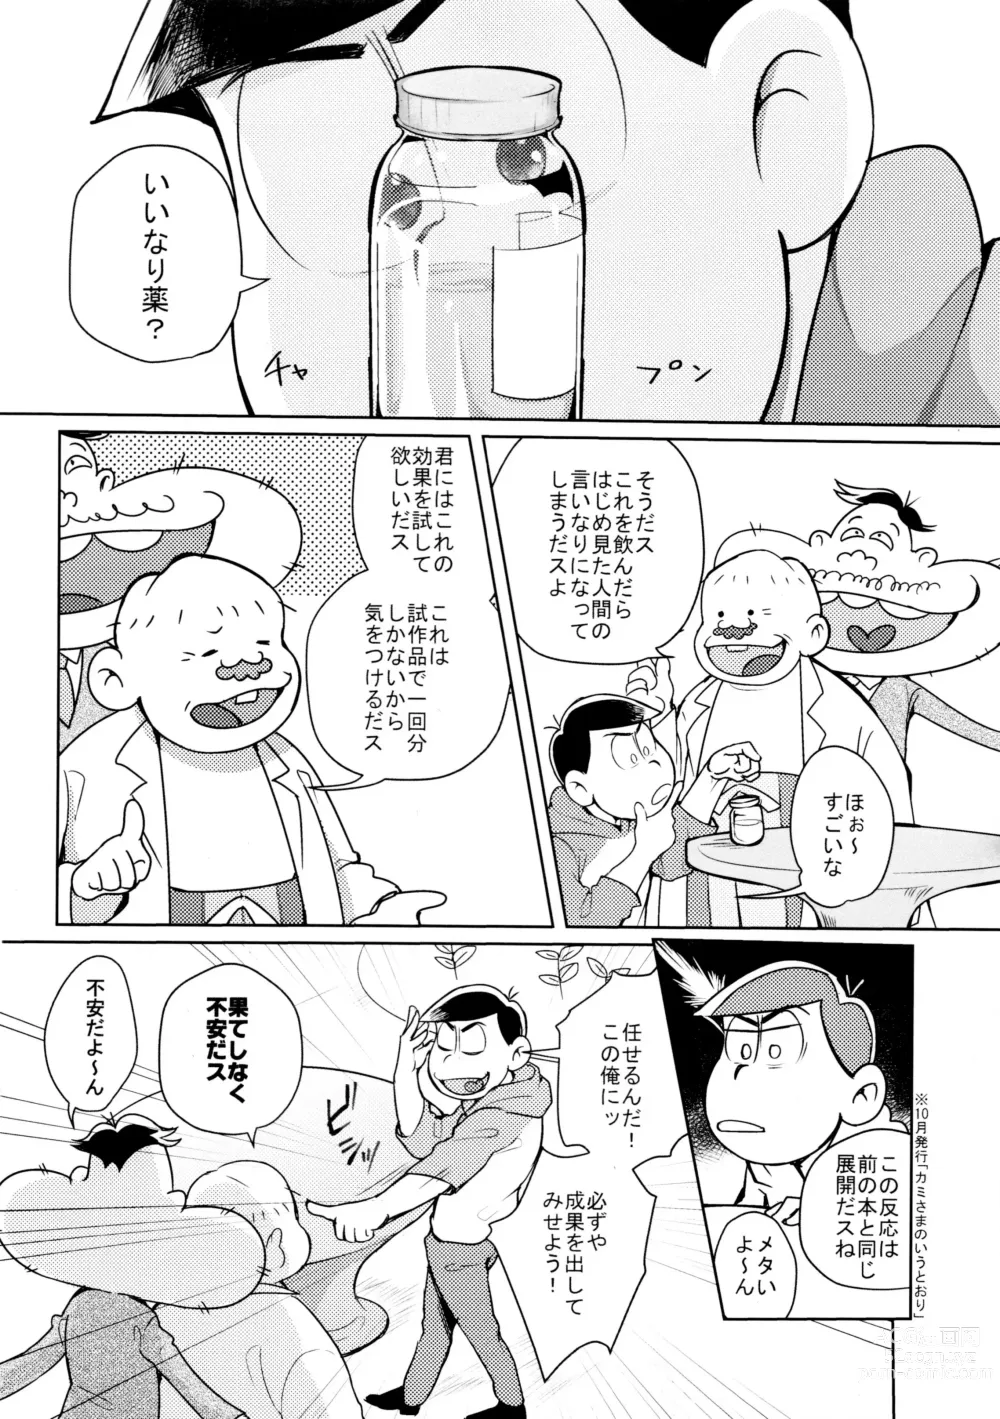 Page 3 of doujinshi Hyoushi Koukan Kikaku Goudoushi Matsuno Ichimatsu Onii-chan no Iinari ni Naranai